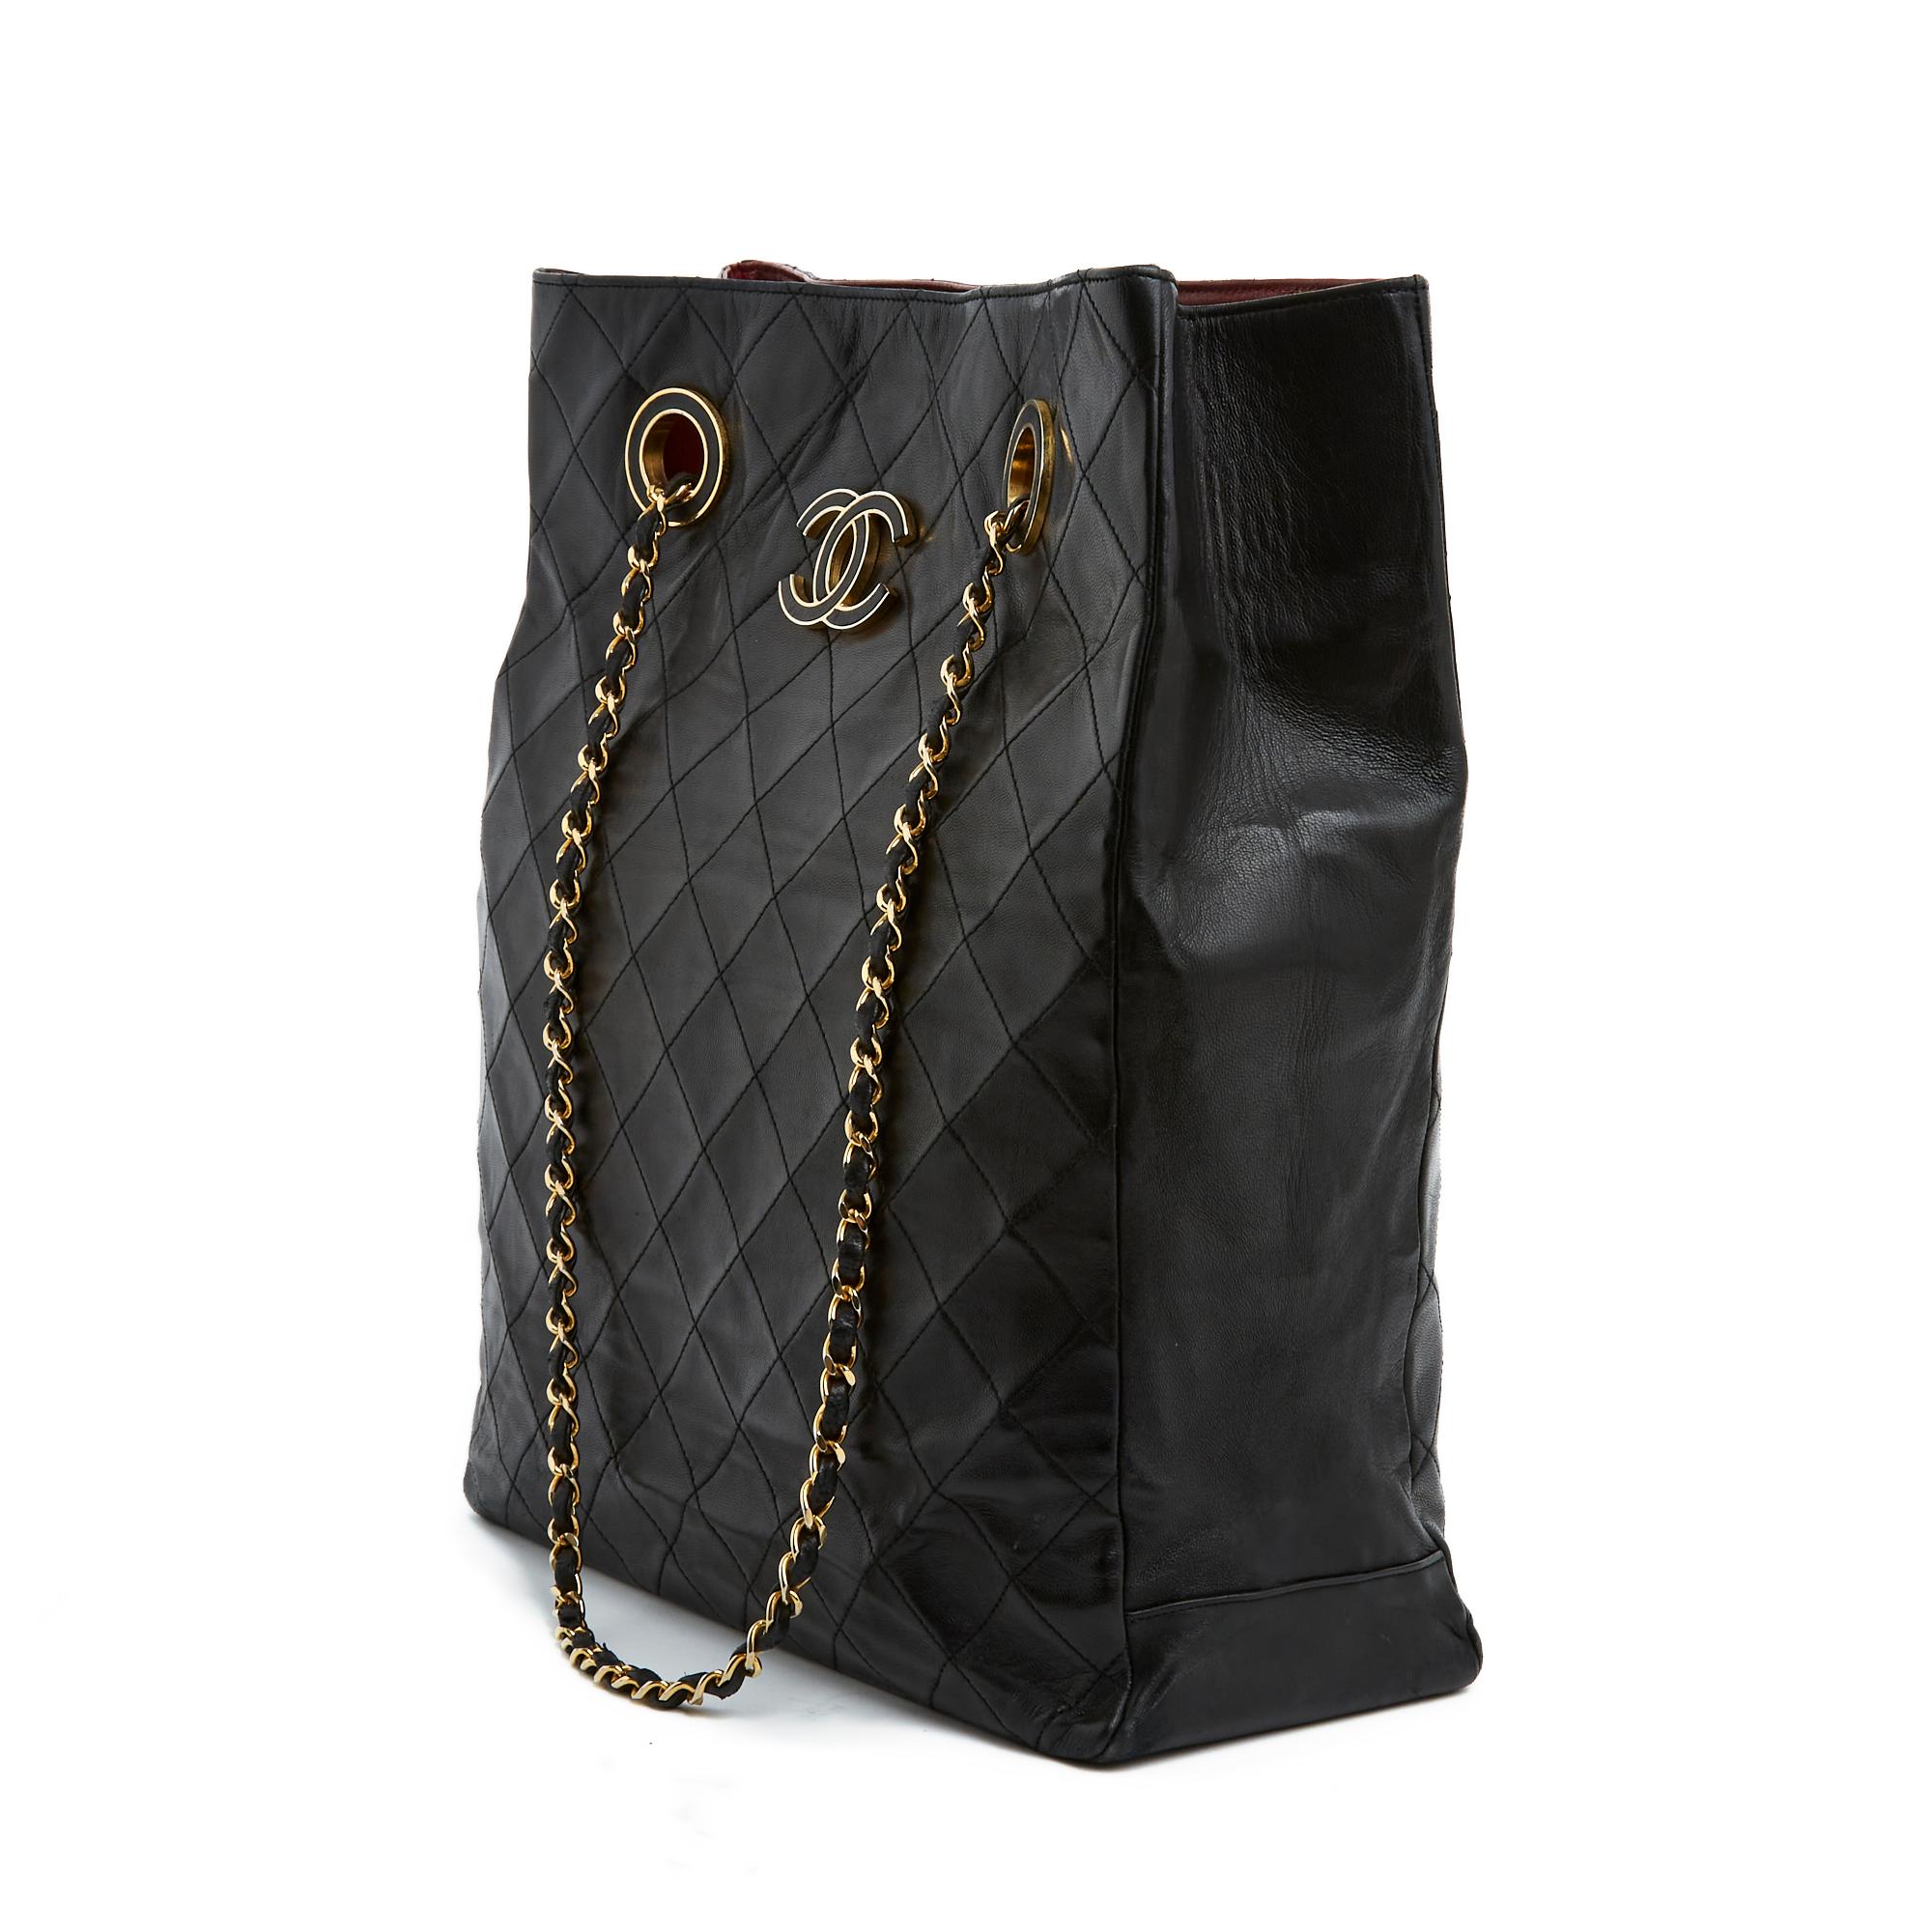 Sac Chanel Haute Couture circa 1985 en cuir matelassé noir, grand logo CC recouvert de cuir noir sur un côté, intérieur en cuir bordeaux avec une grande poche zippée et une autre poche plaquée, fermeture du sac par 2 boutons pression, très longue